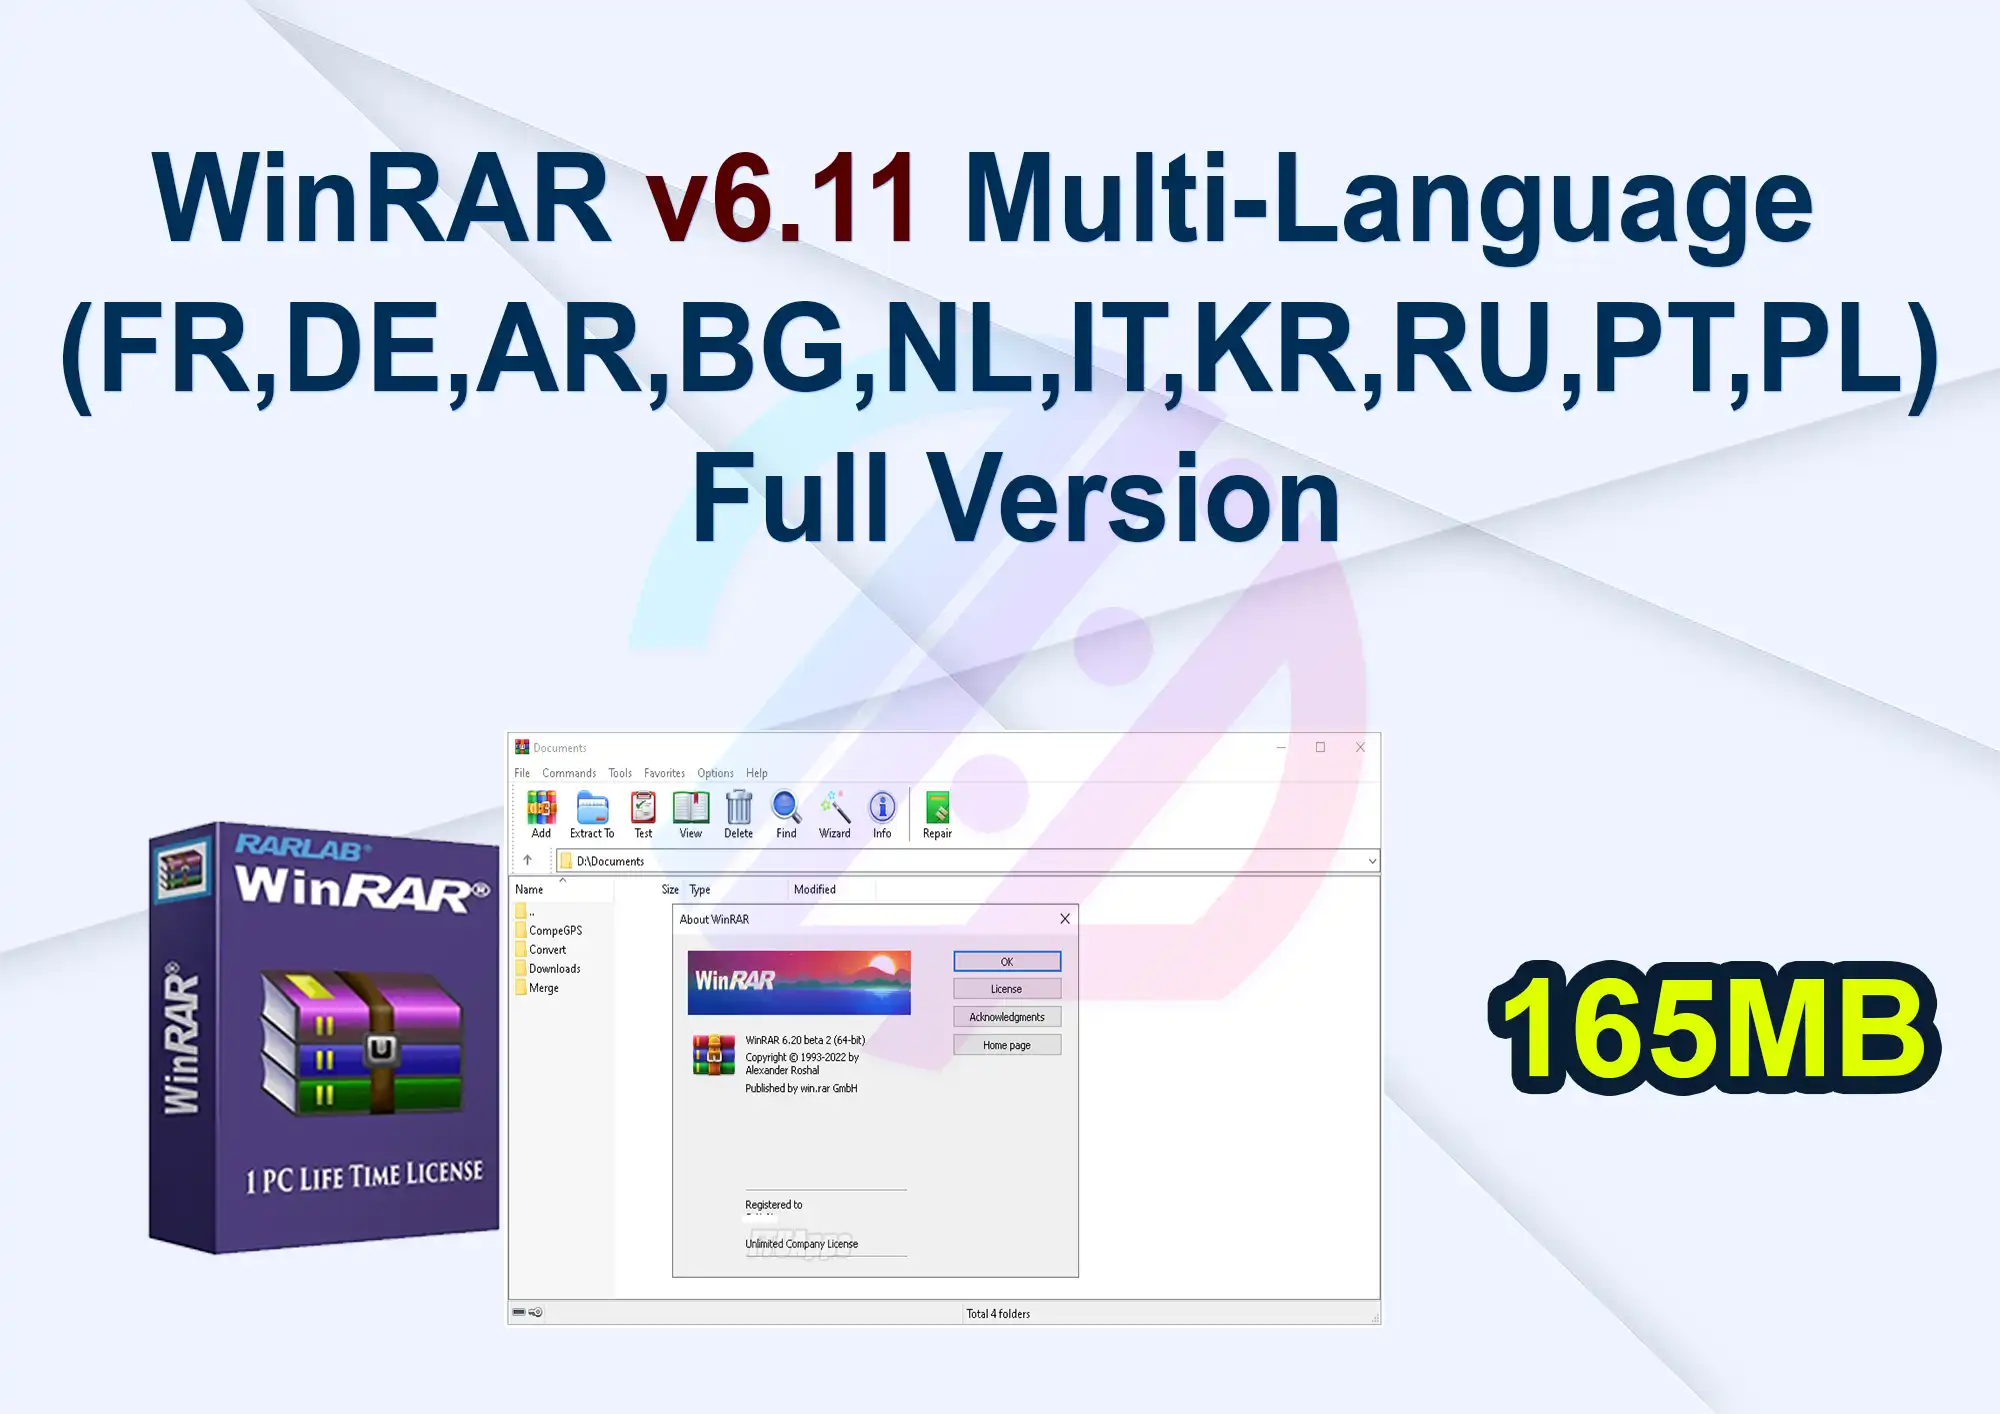 WinRAR v6.11 Multi-Language (FR,DE,AR,BG,NL,IT,KR,RU,PT,PL) Full Version